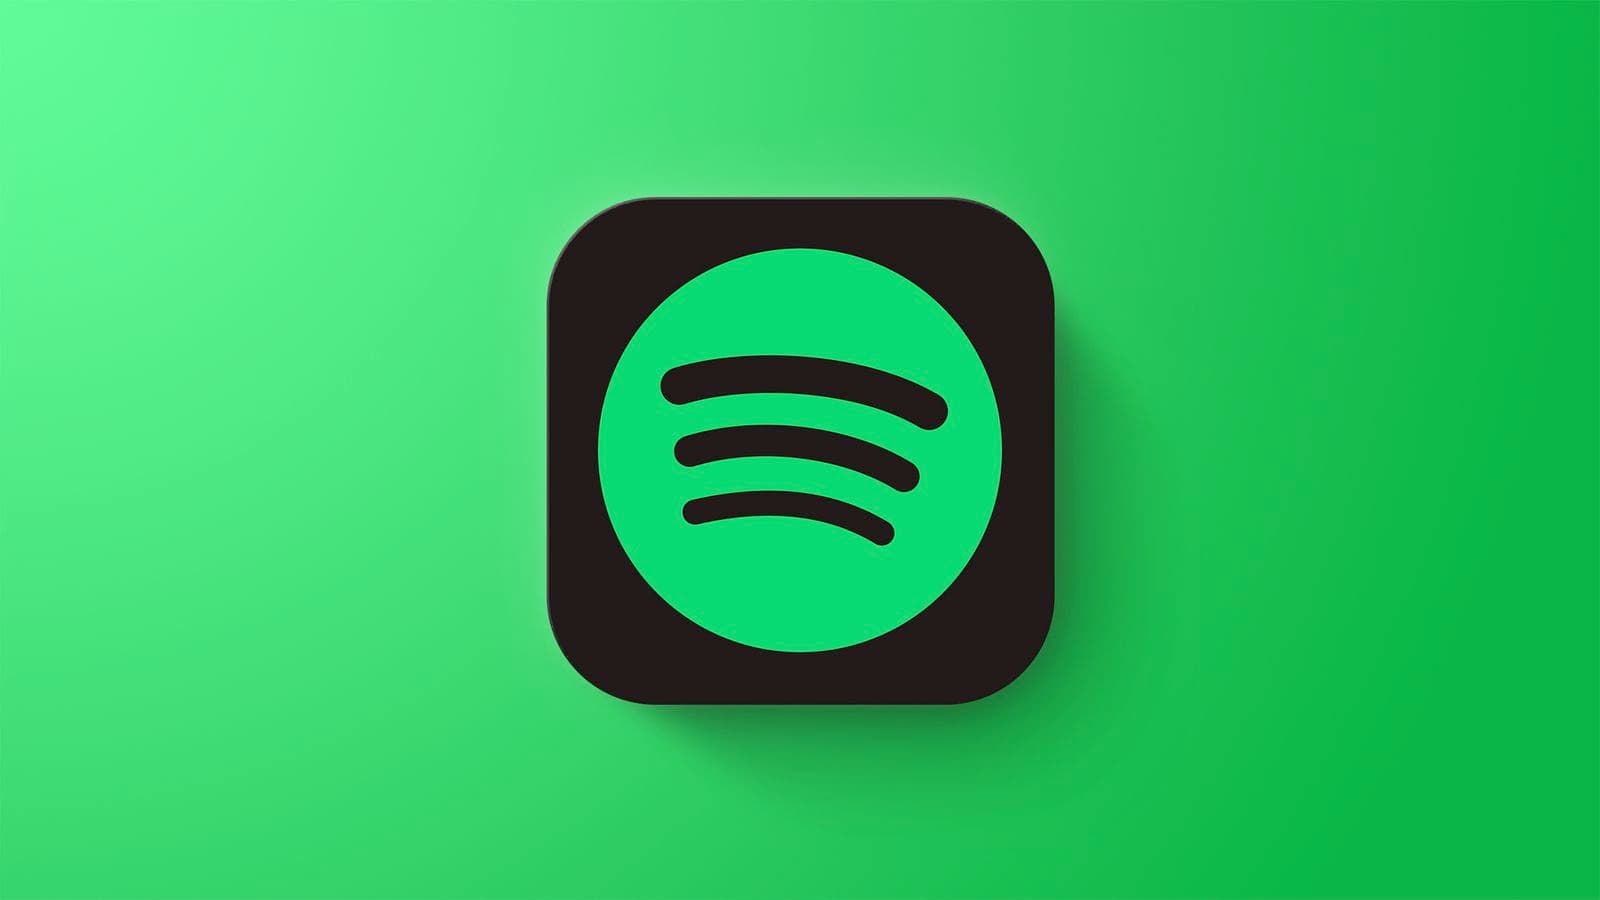 iPhone免費線上聽音樂App推薦，10款免費離線音樂聽到飽8